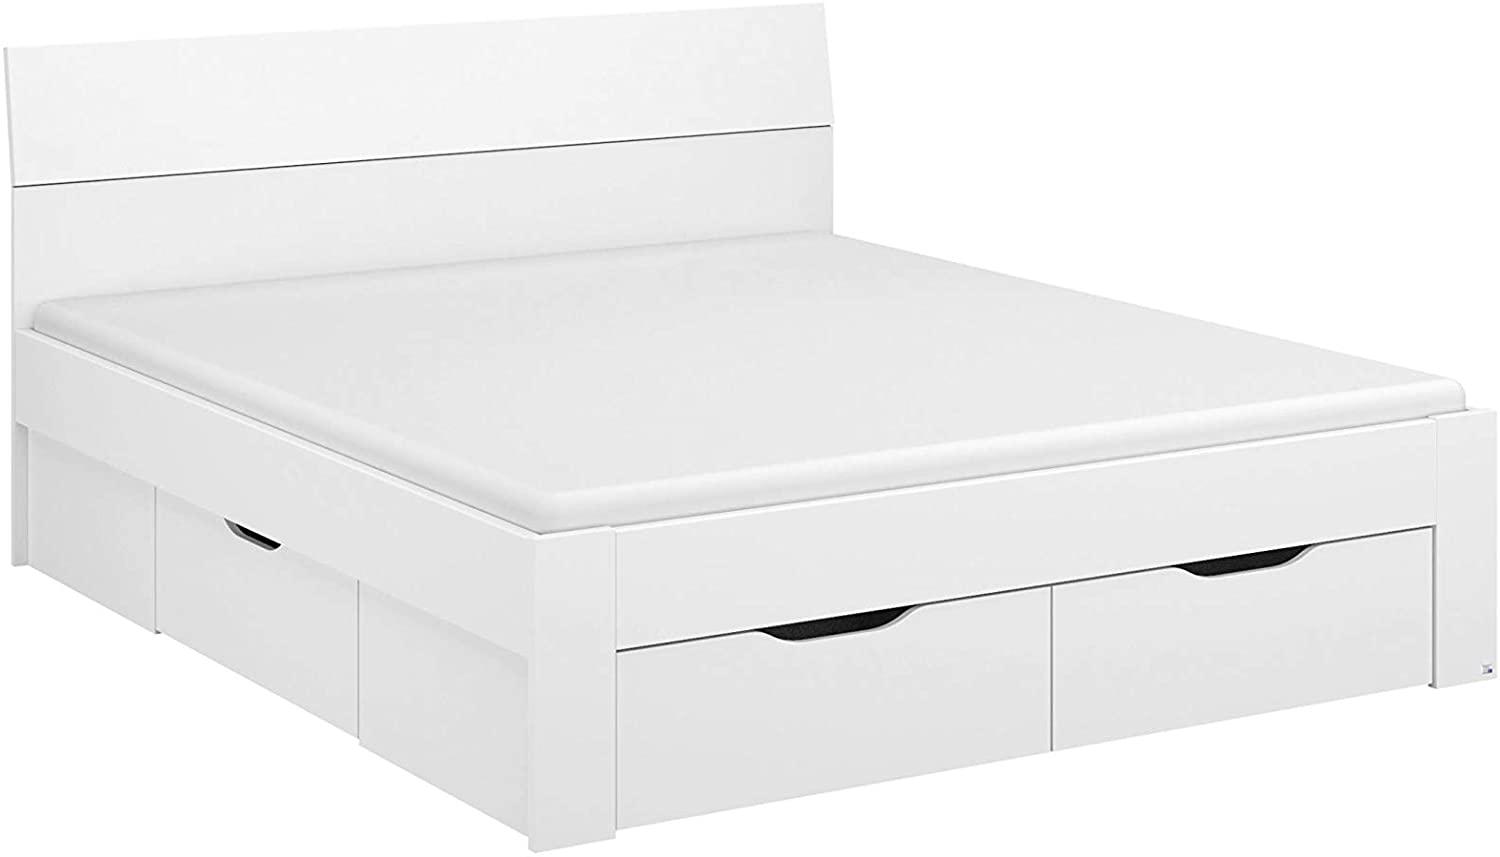 Rauch Möbel Flexx Bett Stauraumbett in Weiß mit 3 Schubkästen als zusätzlichen Stauraum Liegefläche 160 x 200 cm Gesamtmaße Bett BxHxT 165 x 90 x 209 cm Bild 1